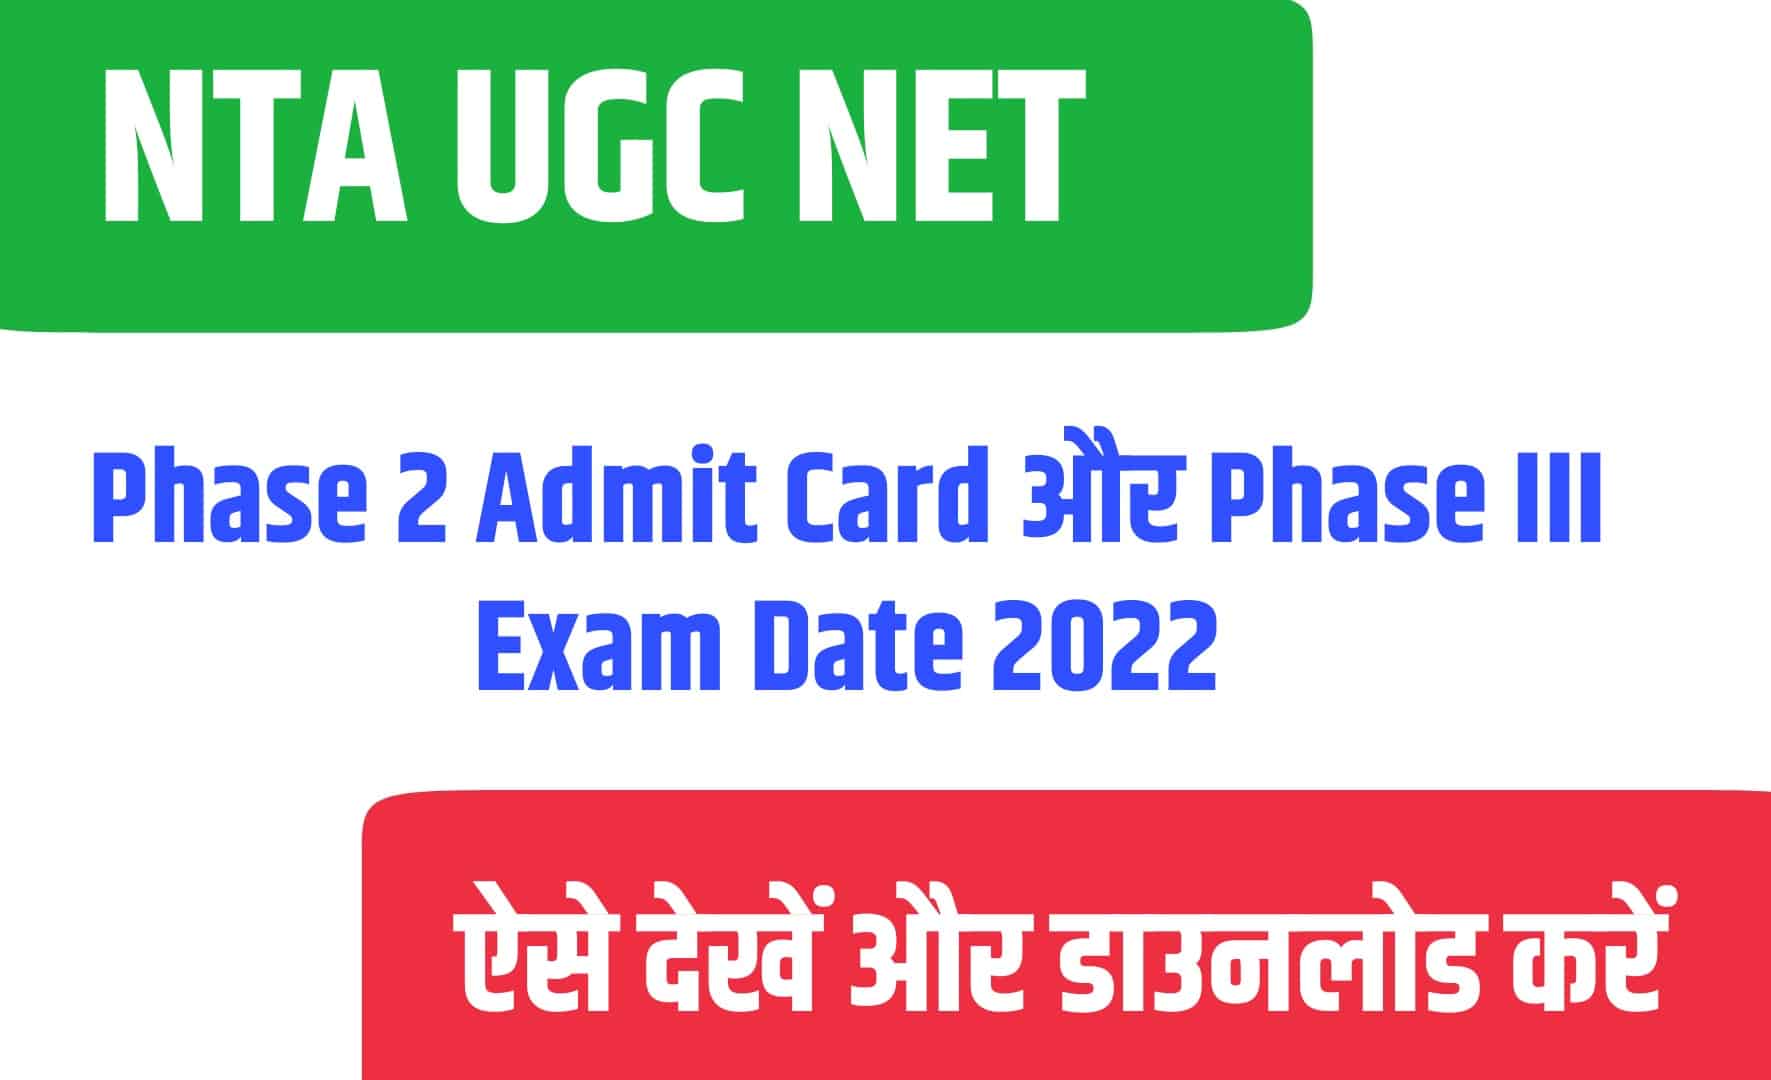 NTA UGC NET Phase 2 Admit Card, Phase III Exam Date 2022 | एंटीए UGC NET फेज 2 एडमिट कार्ड जारी